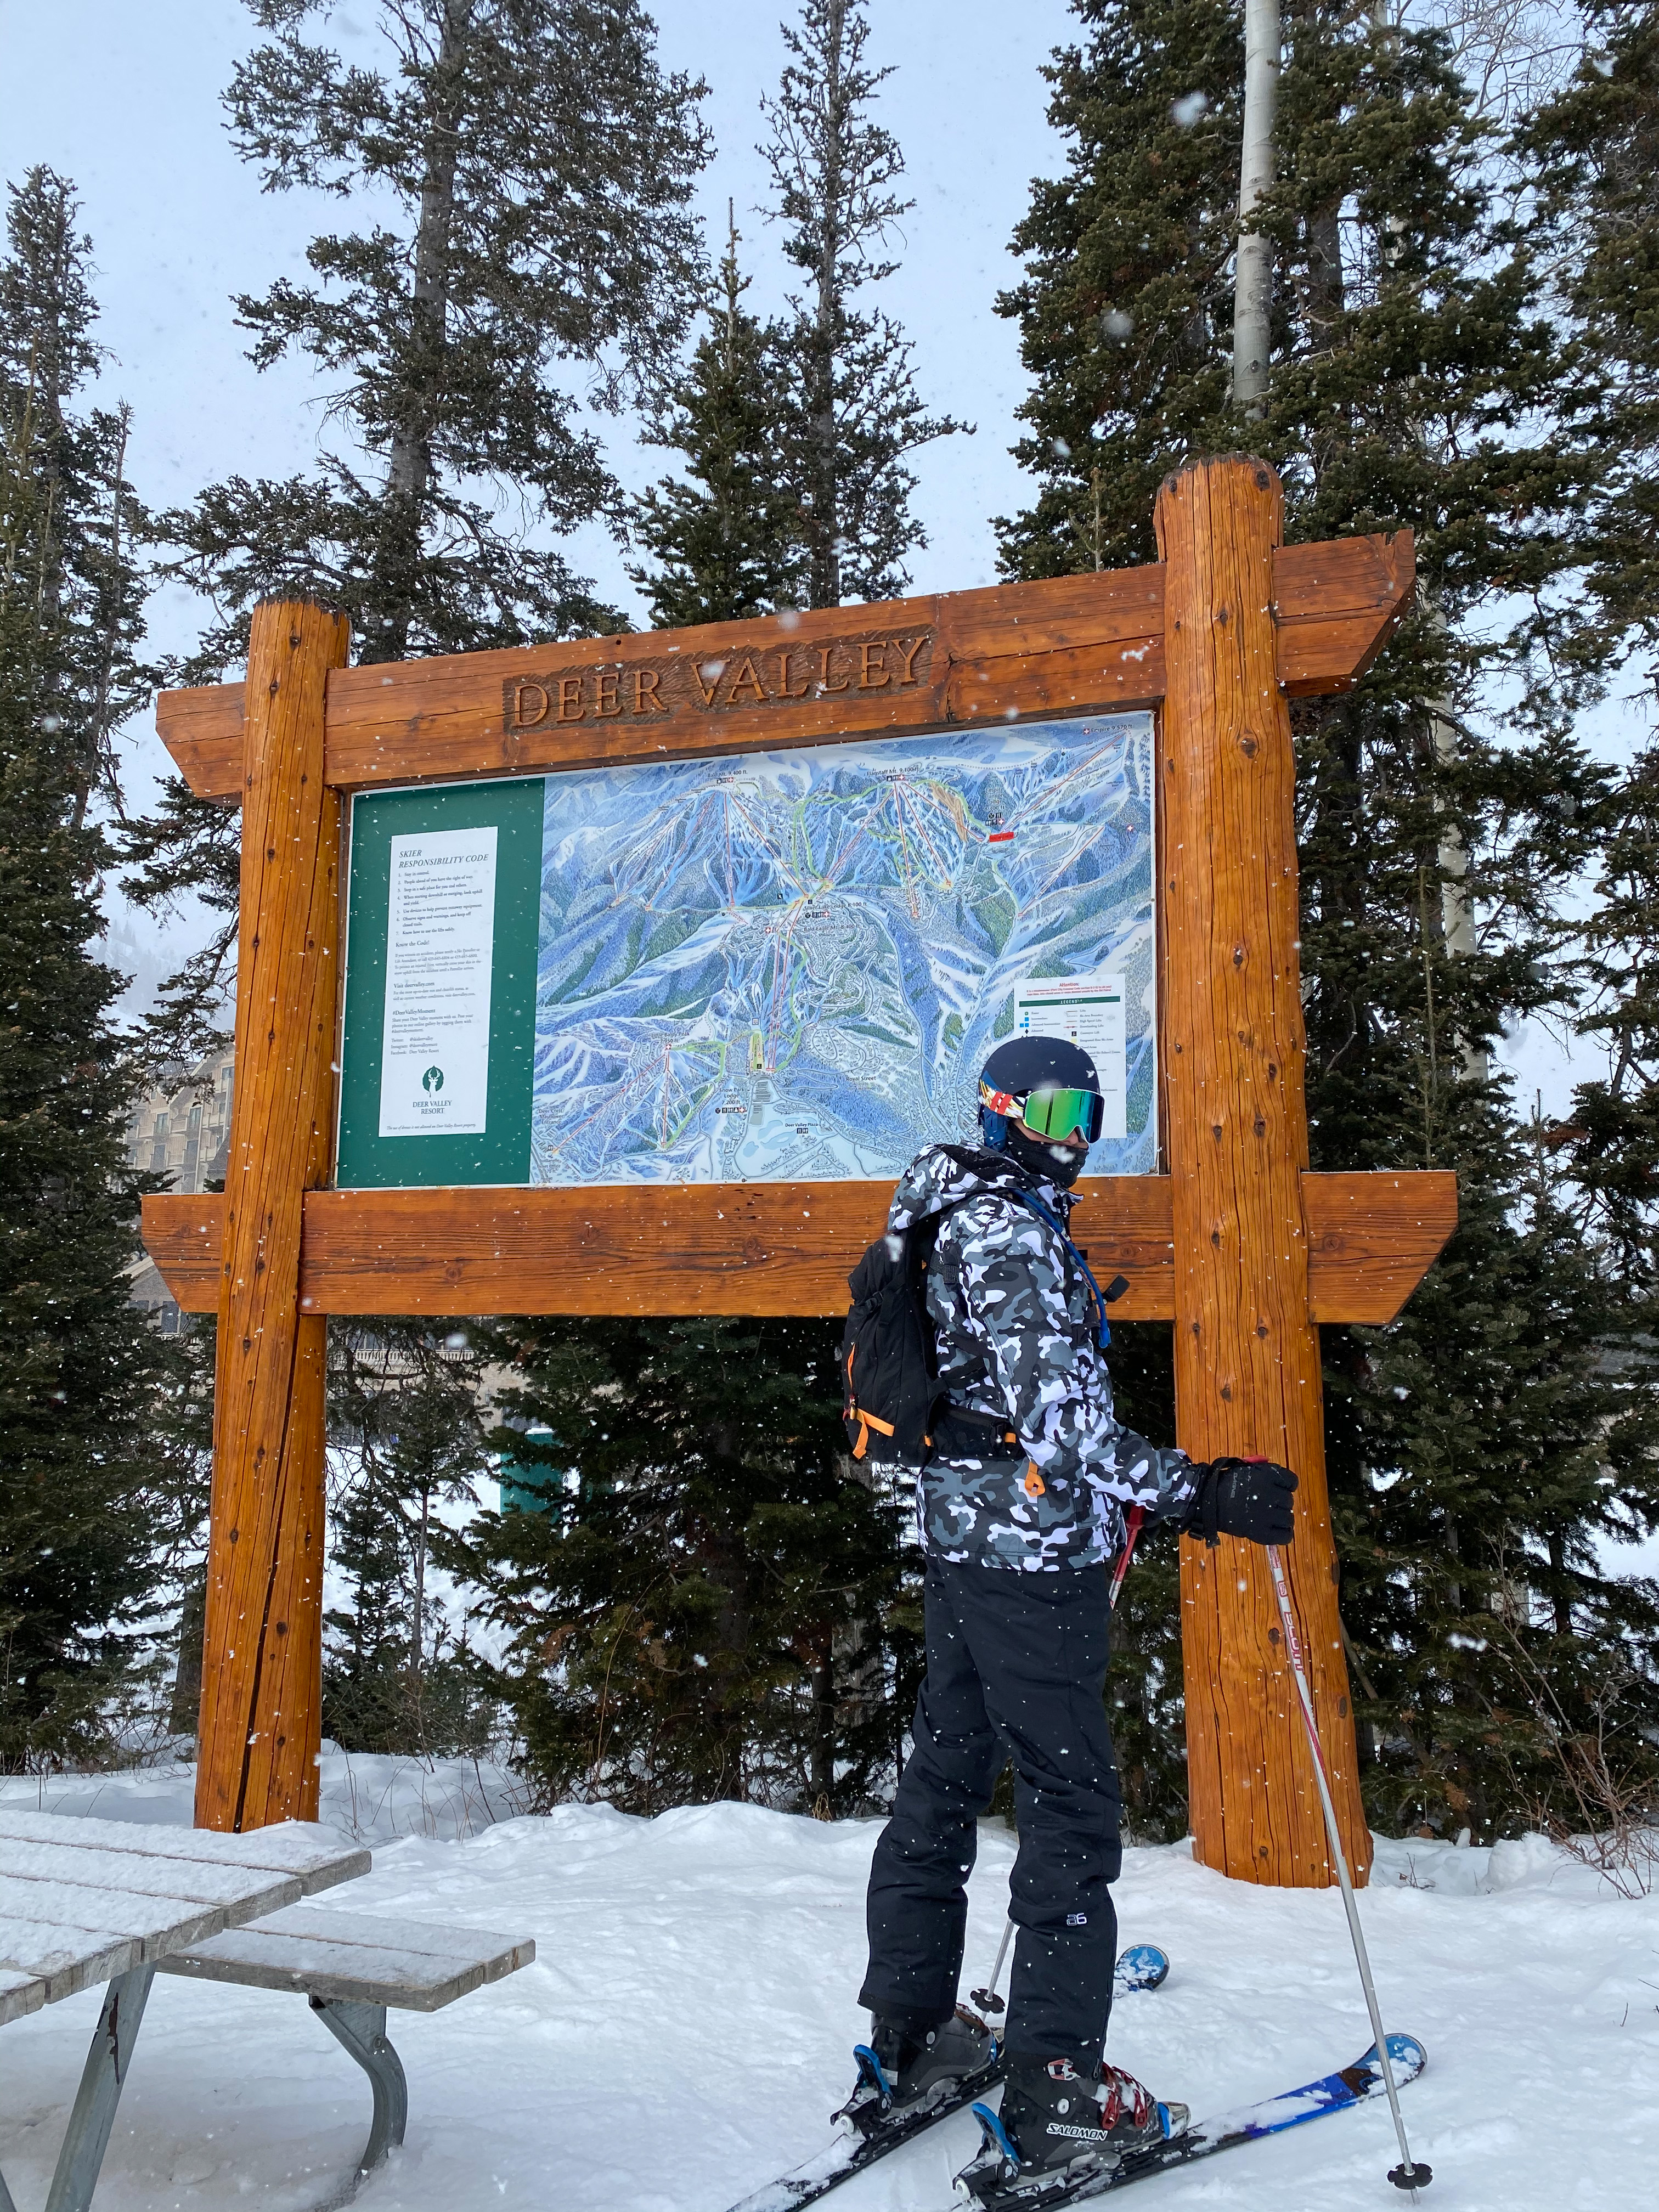 How to spend 1 week in Park City, Utah: Park City Travel Guide - Park City skiing, Deer Valley skiing